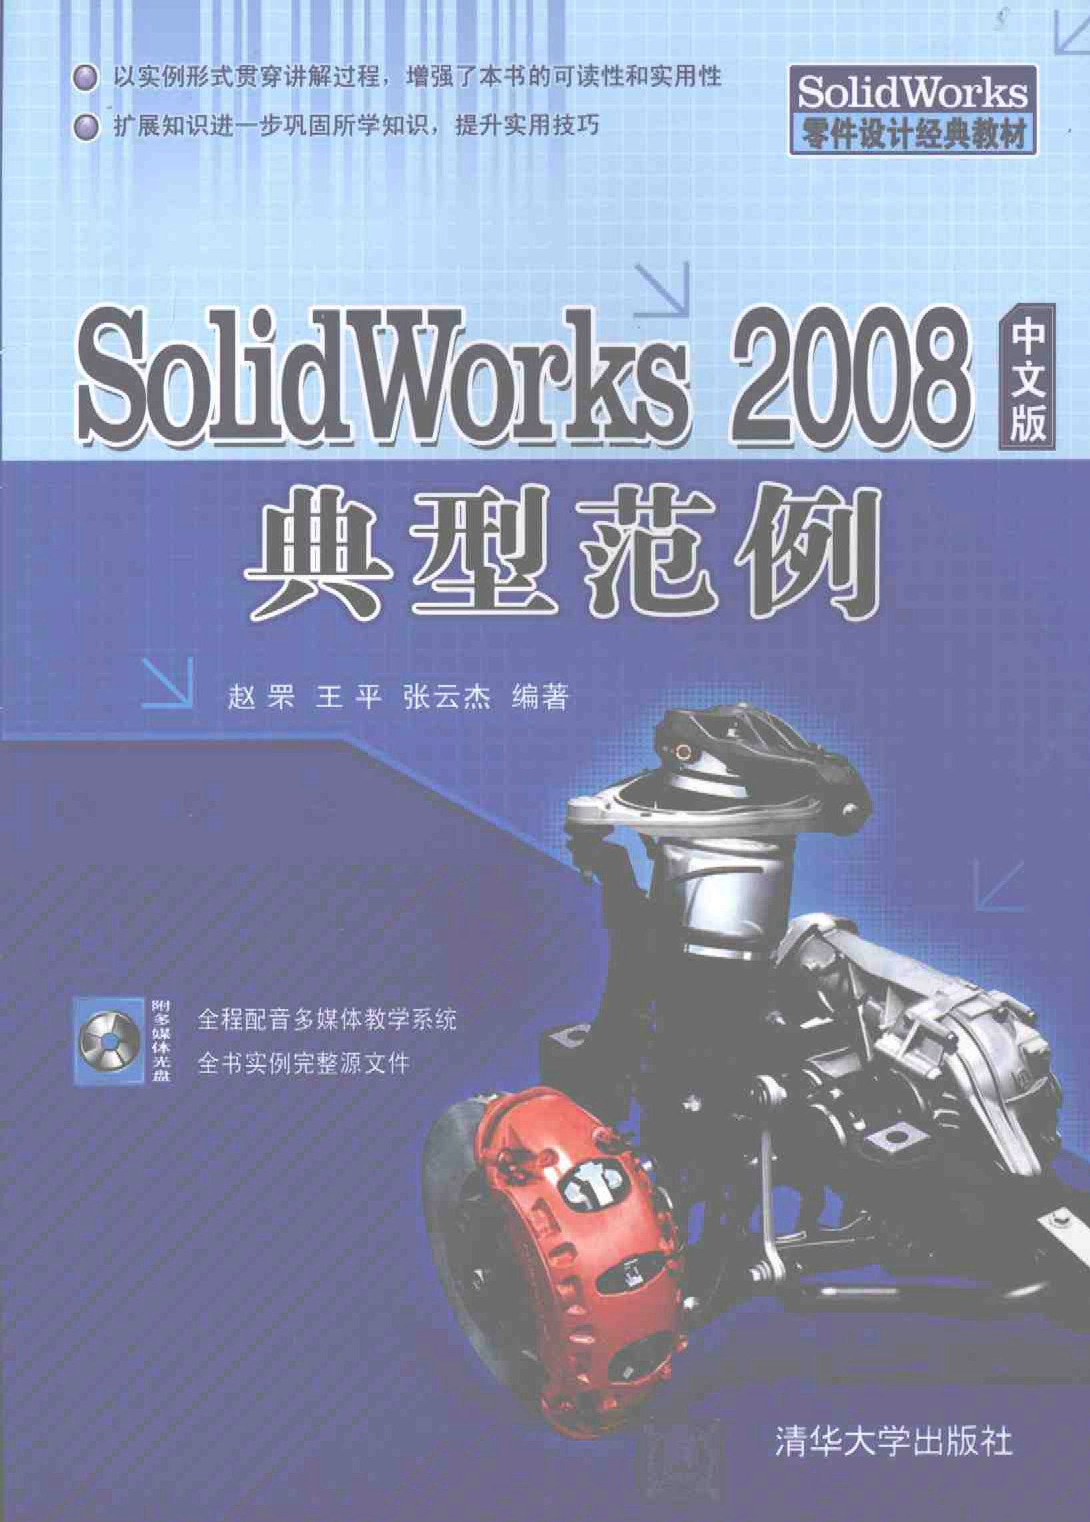 Solidworks 2008中文版典型范例